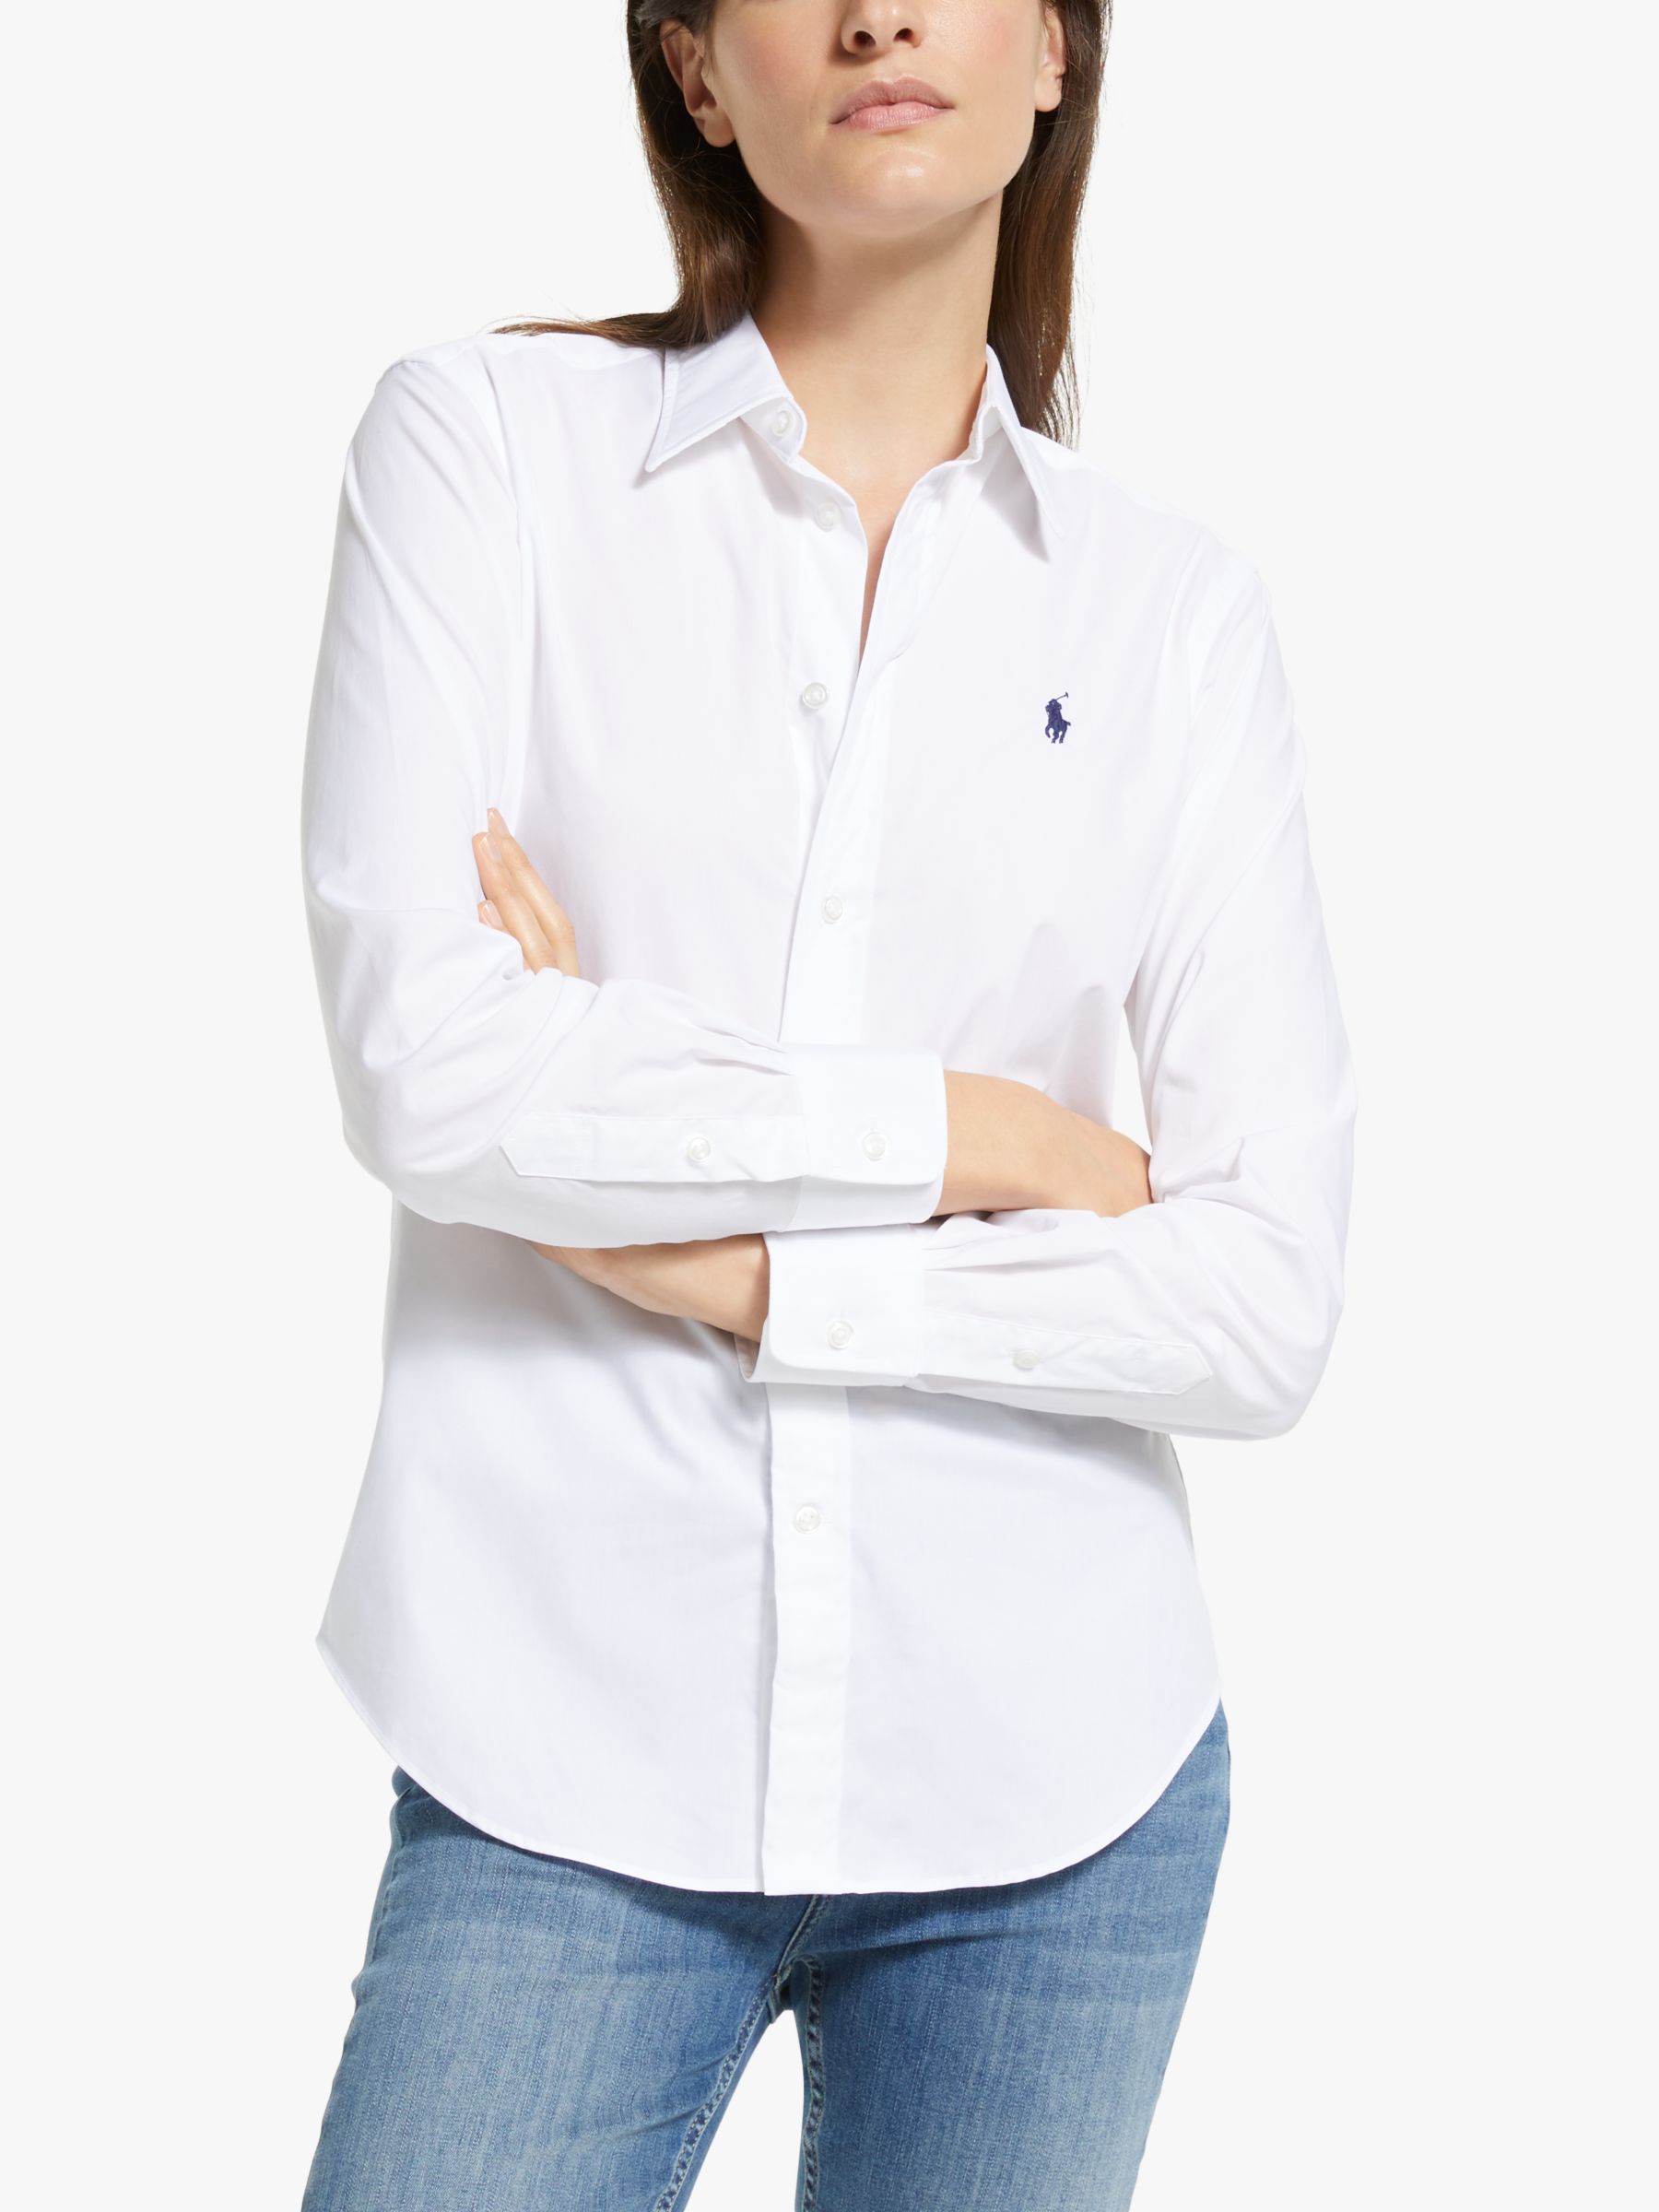 Polo Ralph Lauren Georgia Shirt, White